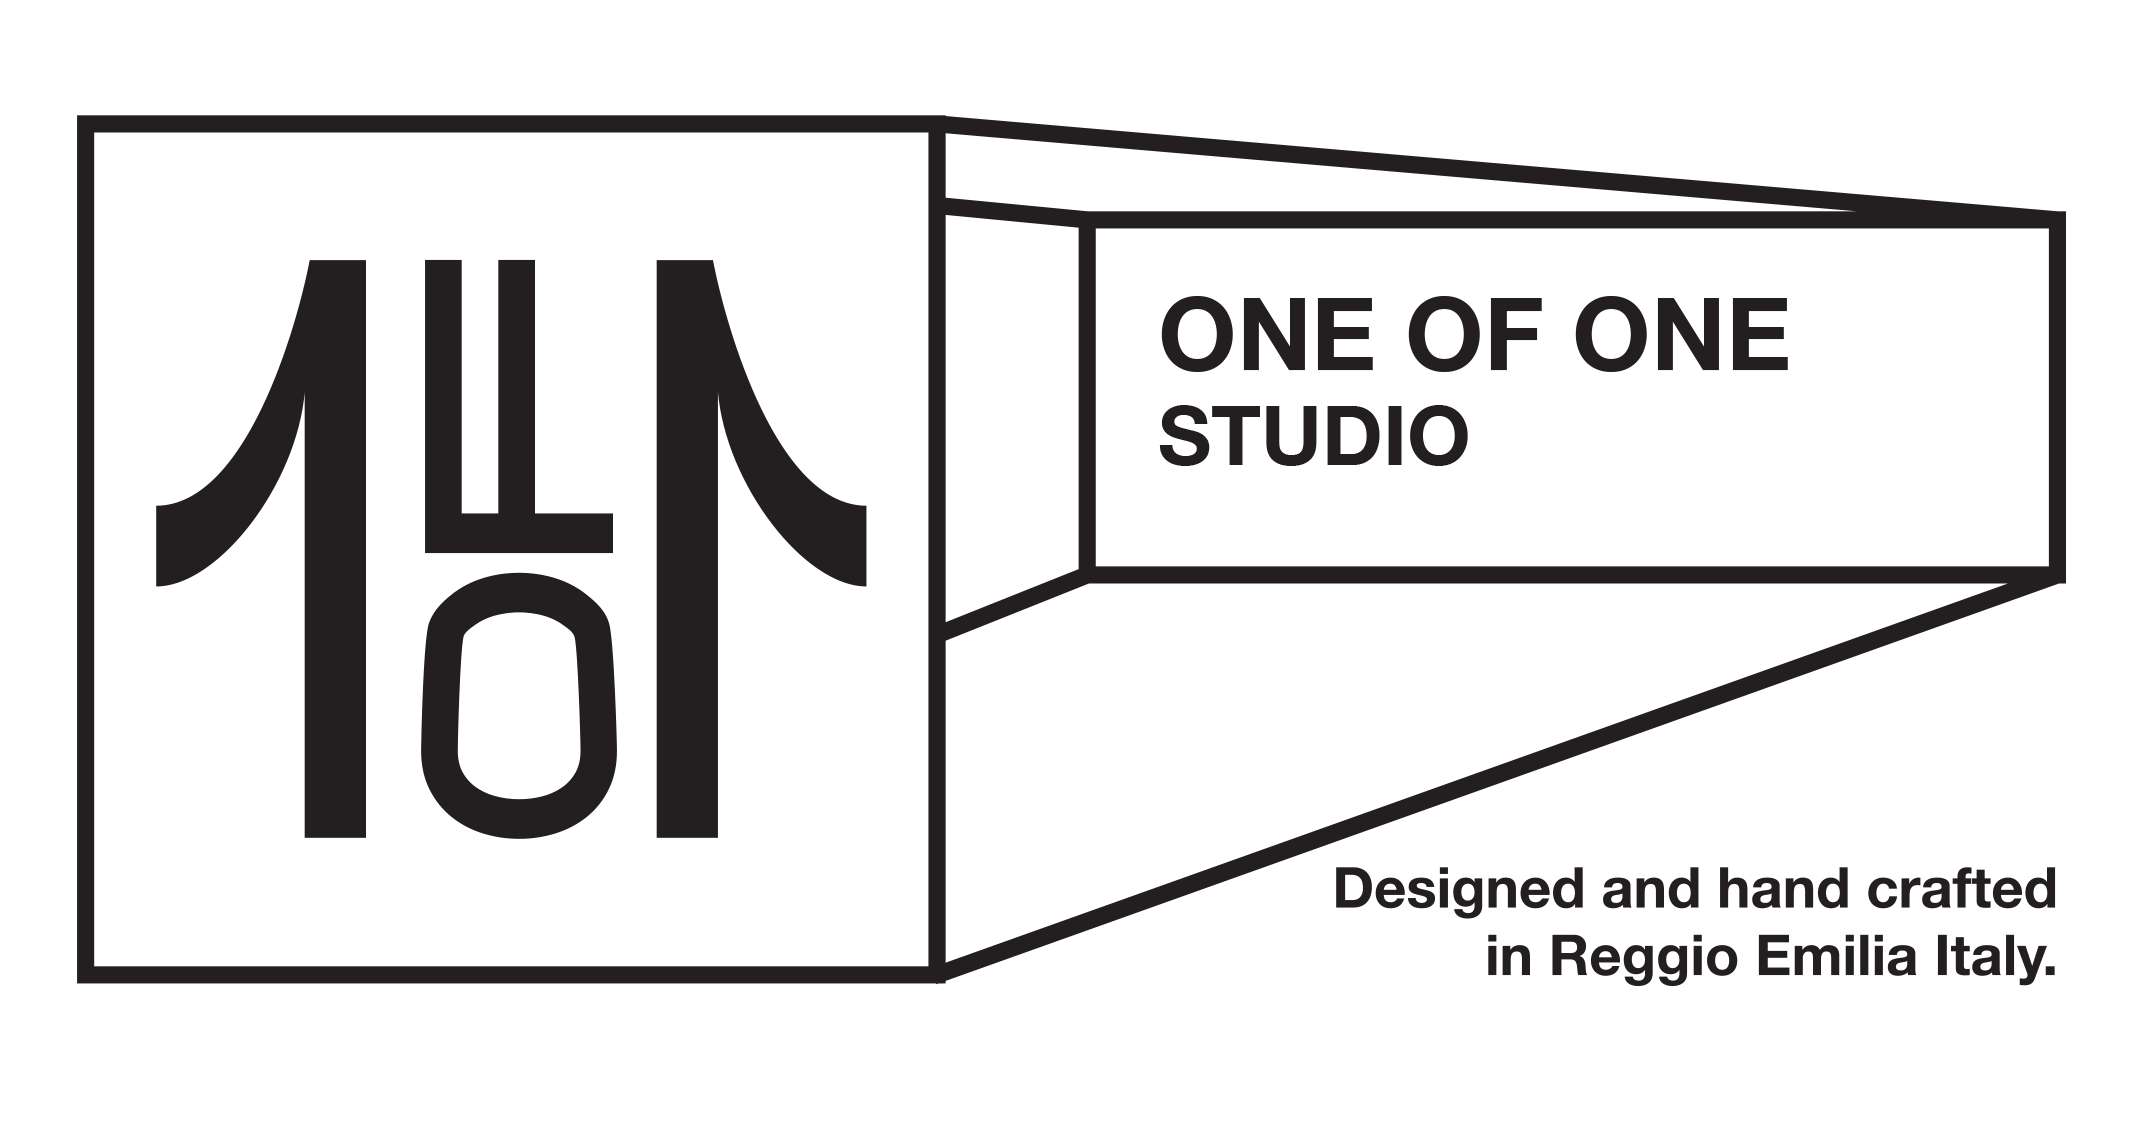 One of one studio logo